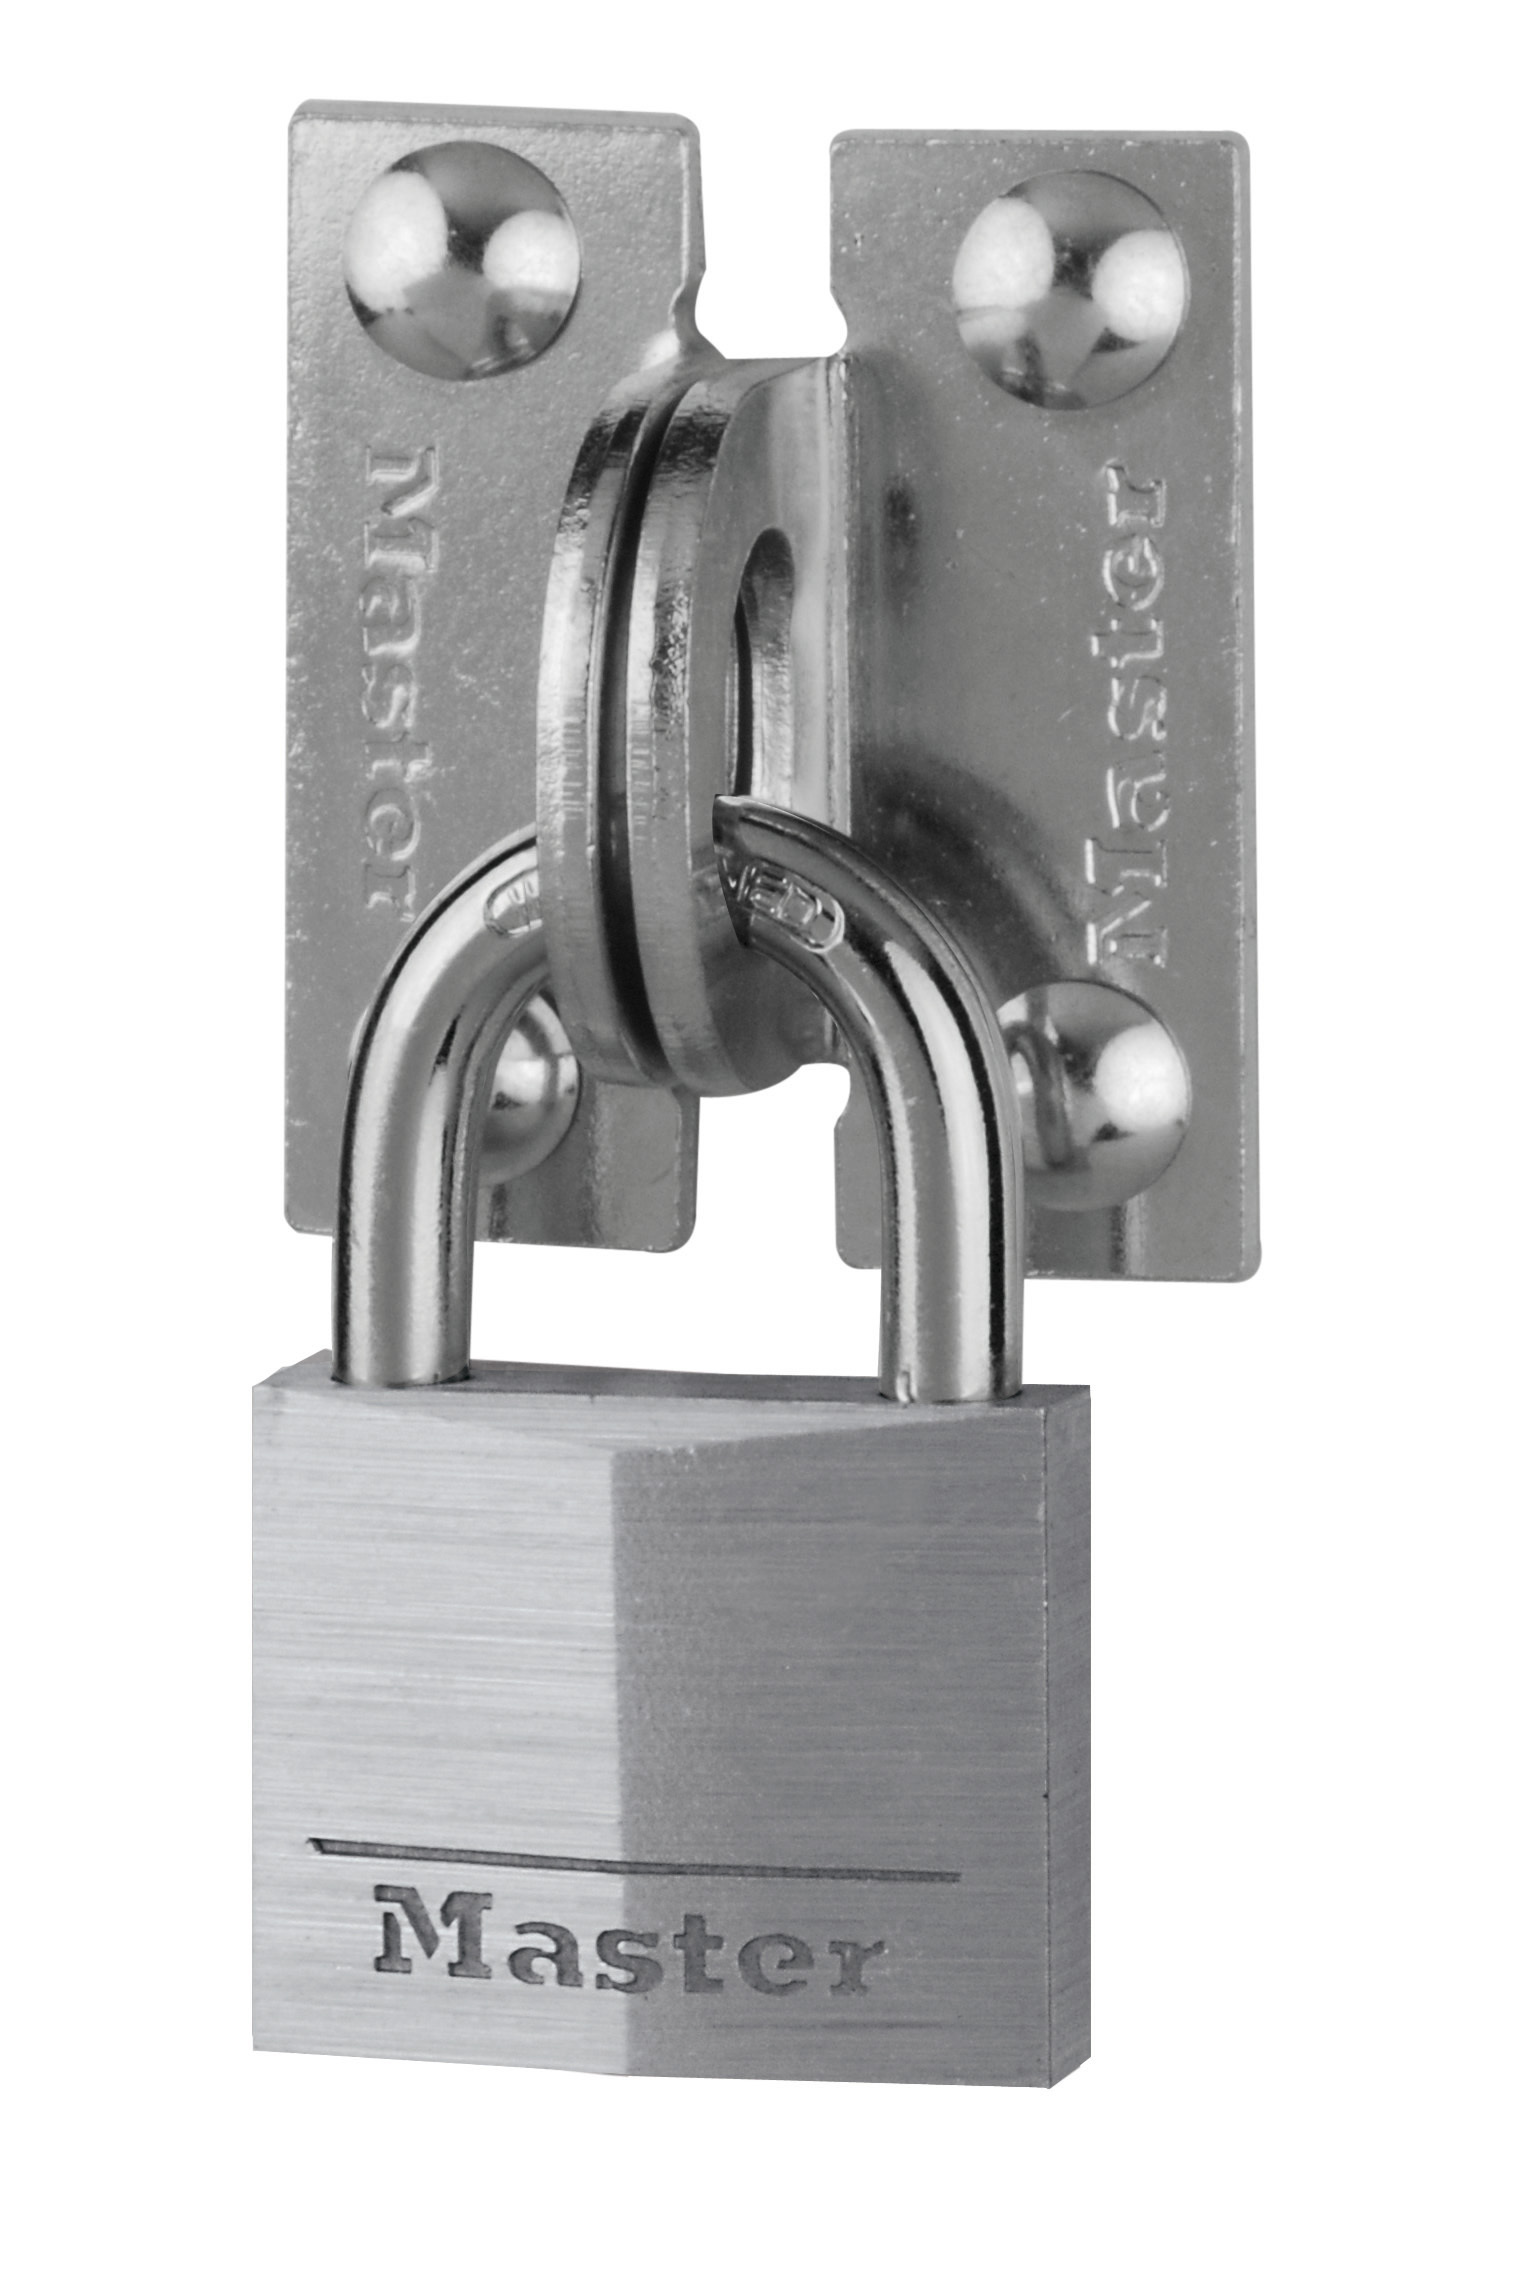 Masterlock Set met stalen hangslotogen nr. 60r met een rechte hoek en aluminium hangslot nr. 9140 van 40 mm met sleutels